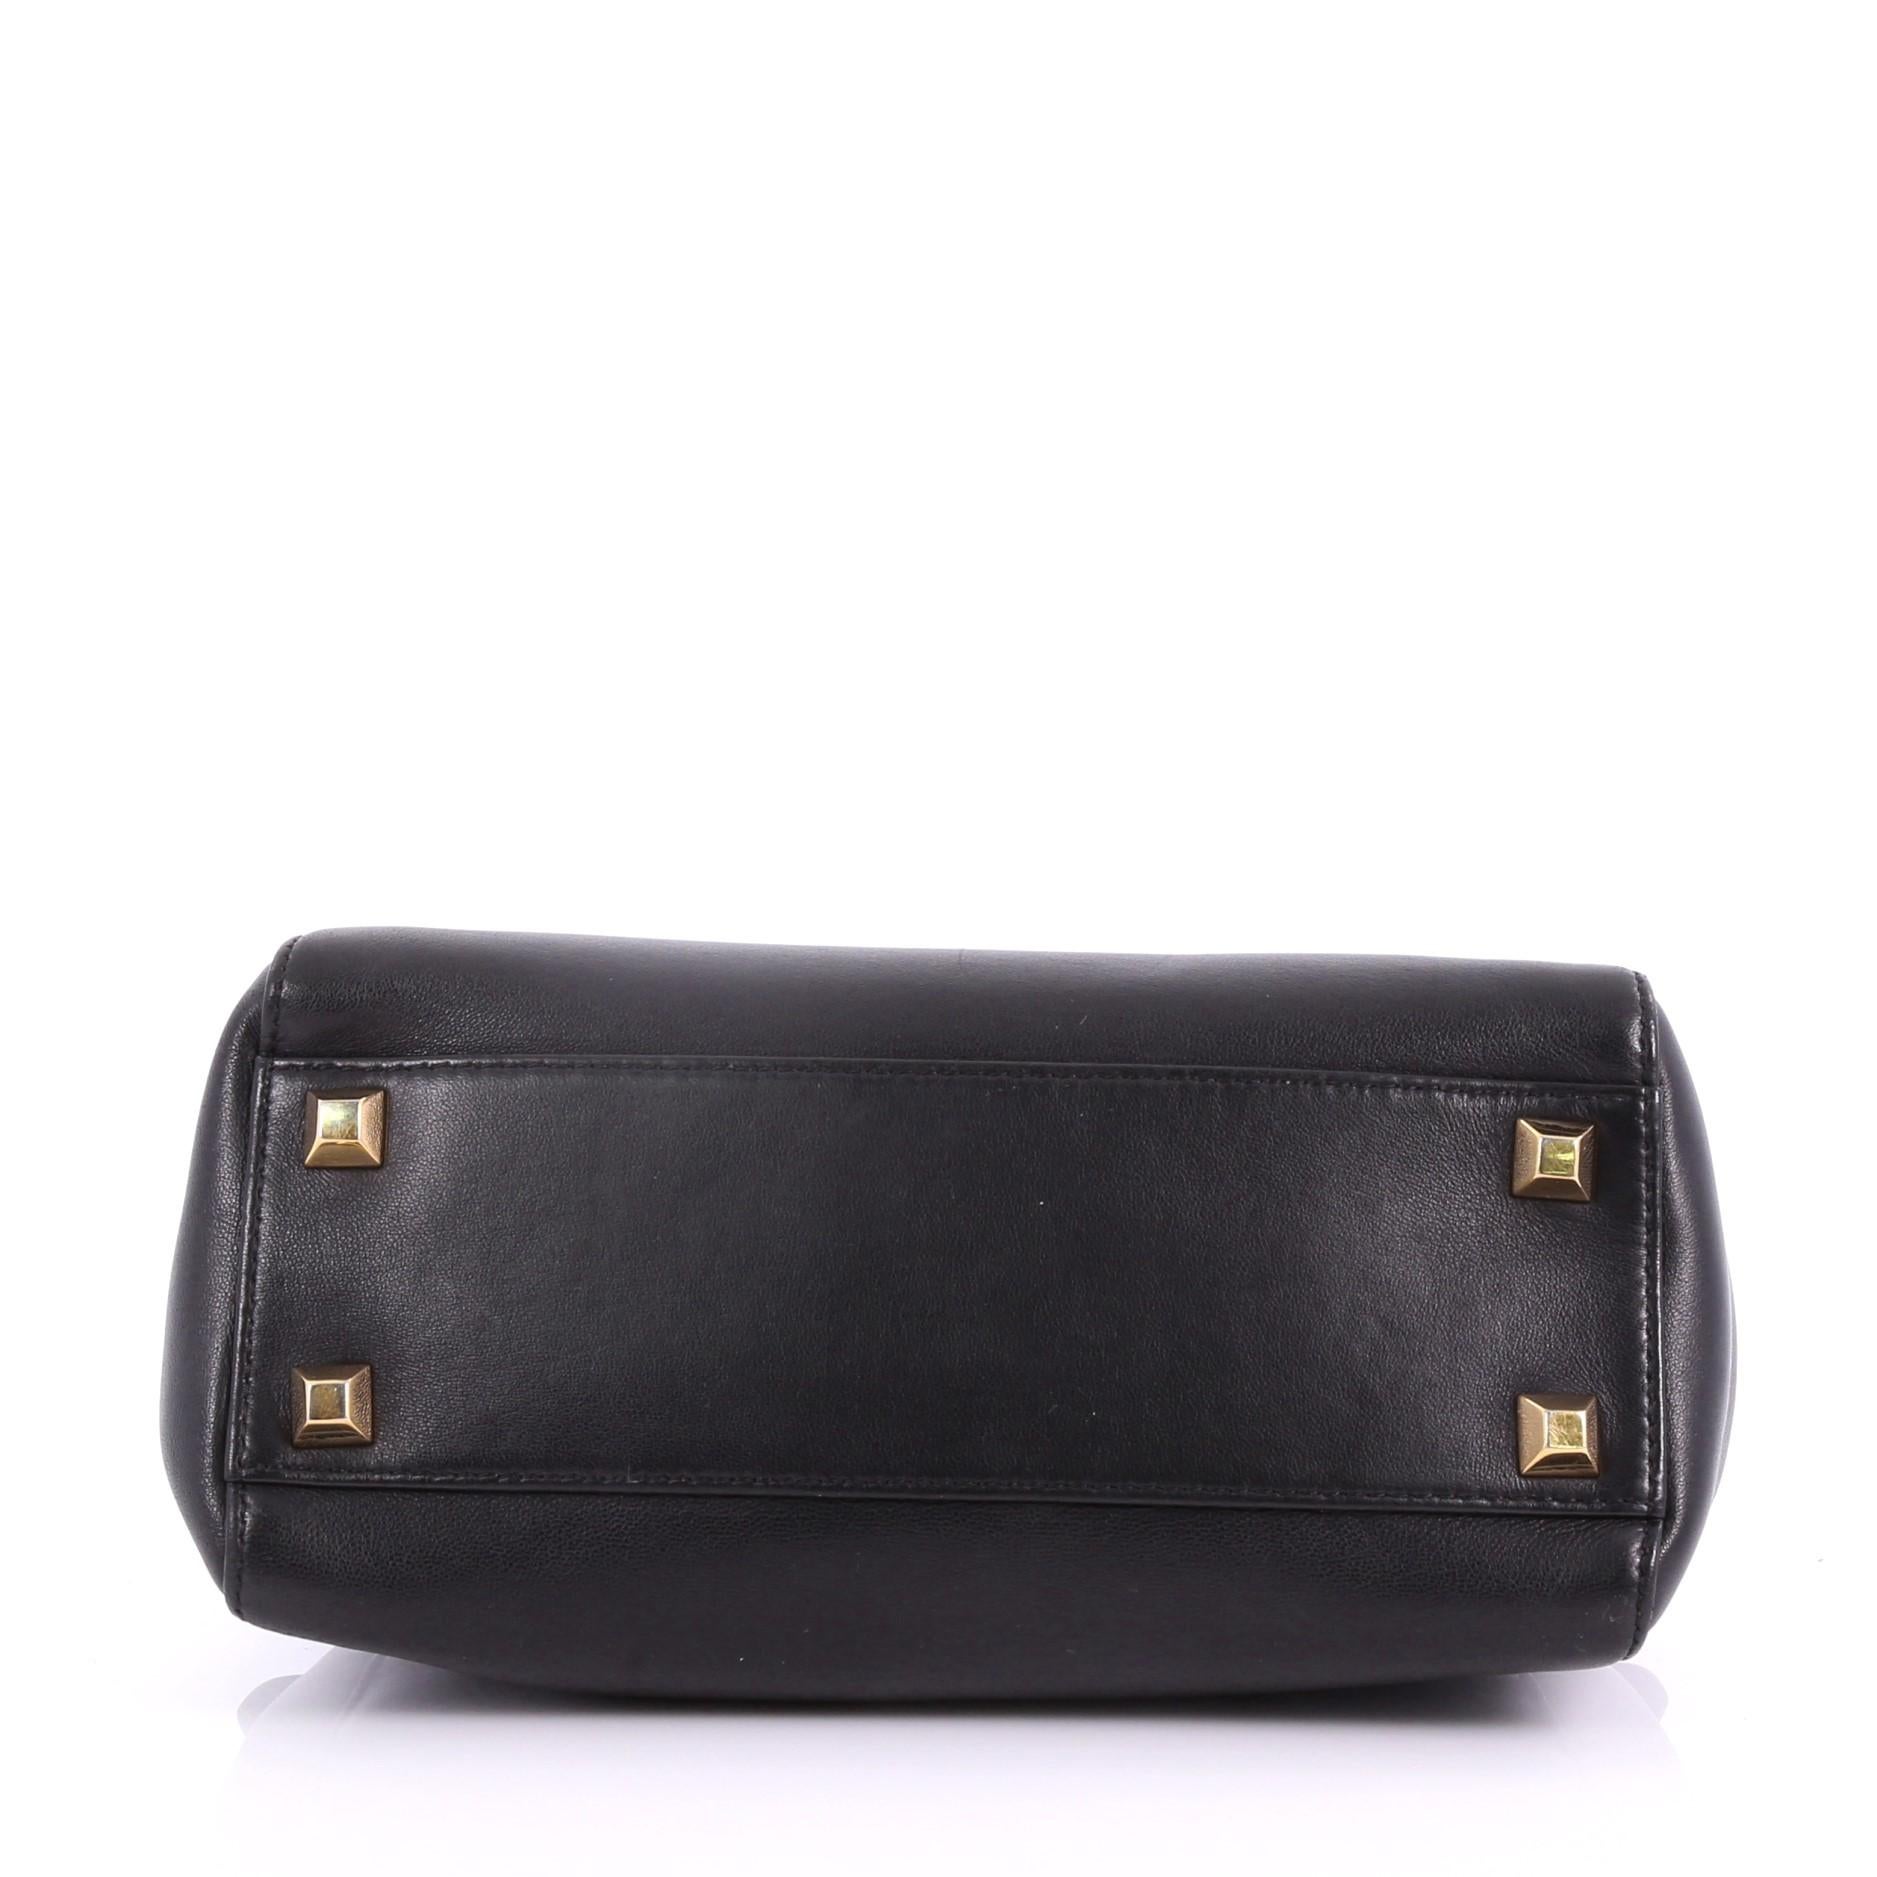 Black Fendi Peekaboo Handbag Leather with Studded Detail Mini